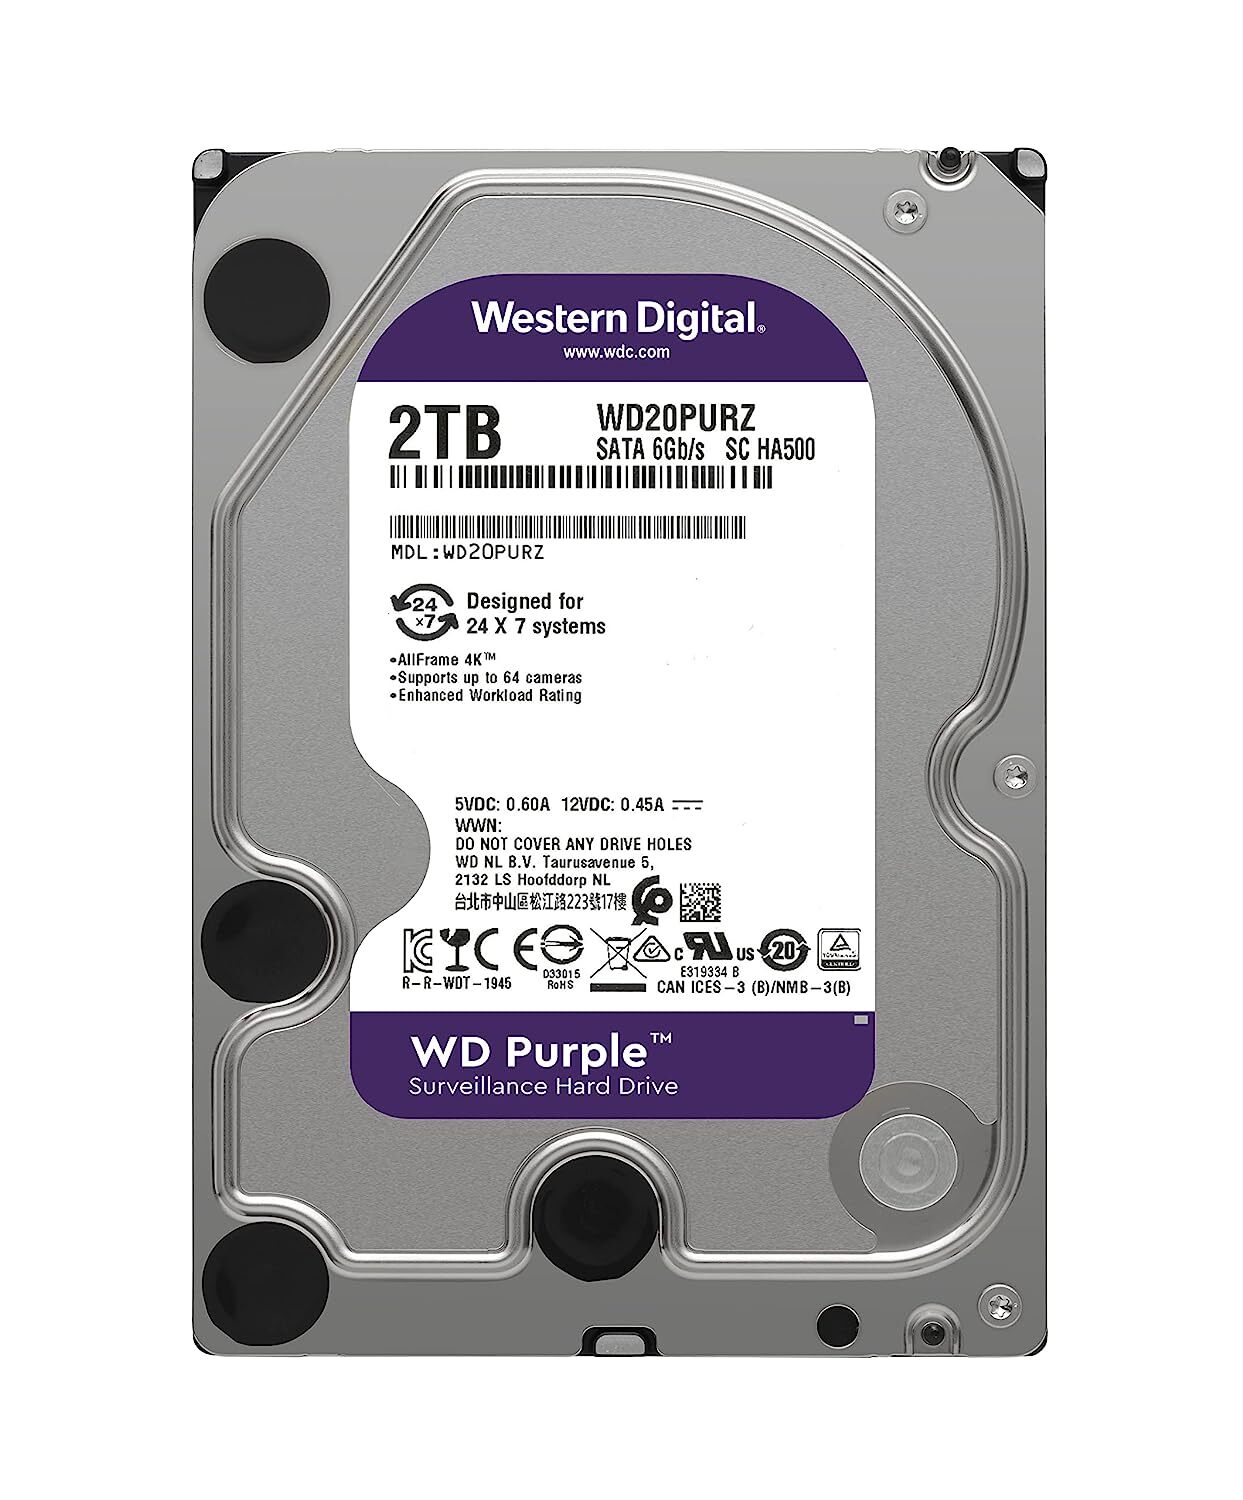 Western Digital WD Purple 2TB SATA Internal Surveillance Hard Drive (WD20PURZ)